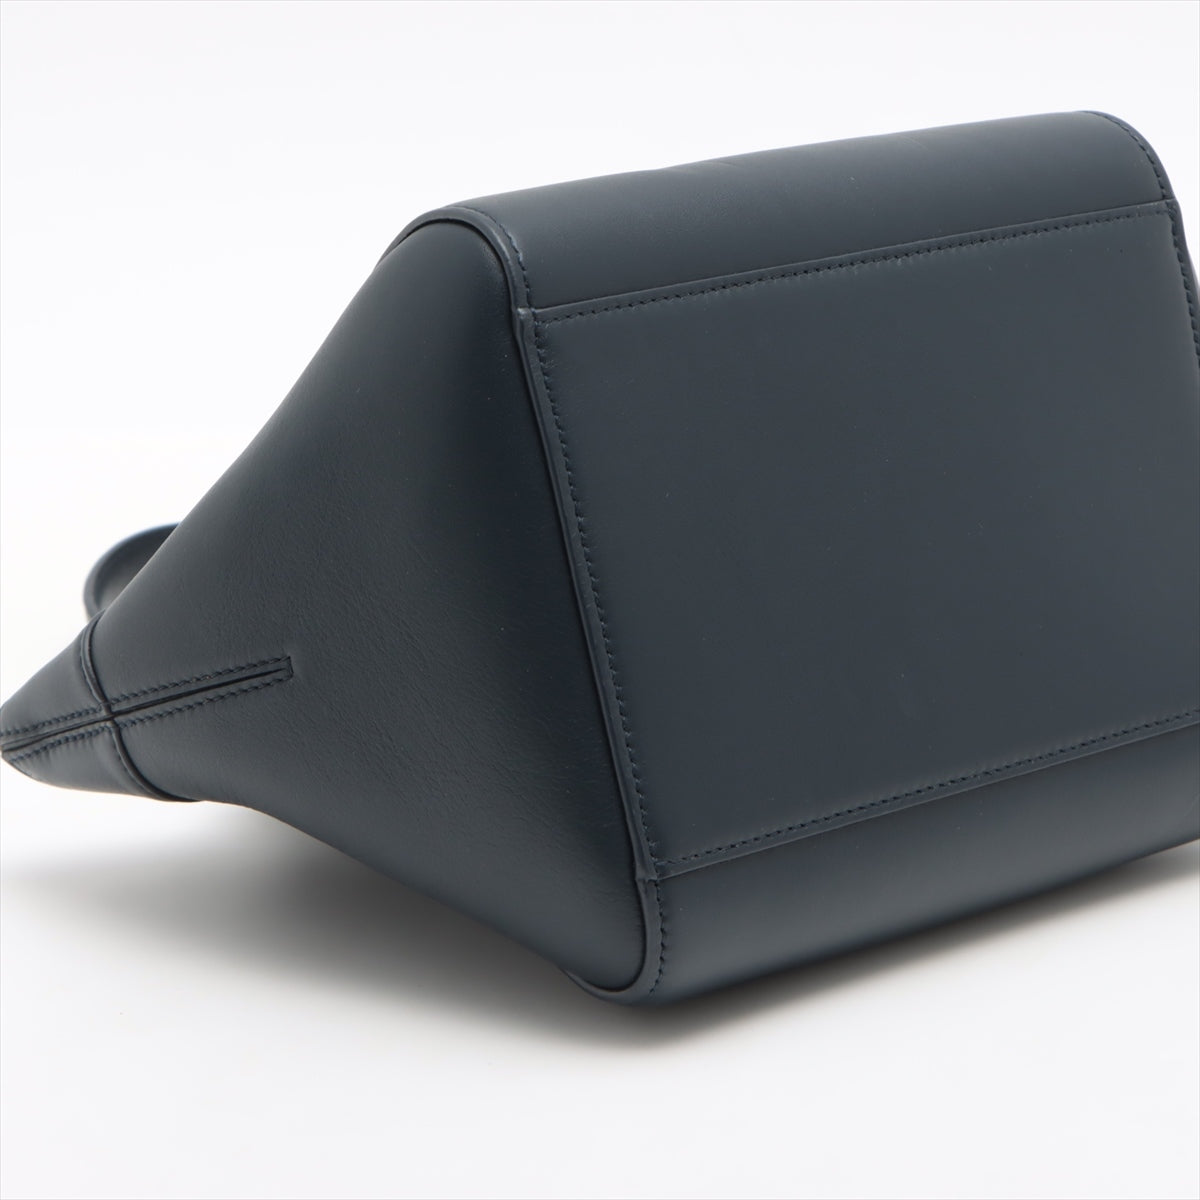 Loewe hammock nuggets Leather 2way handbag Navy blue